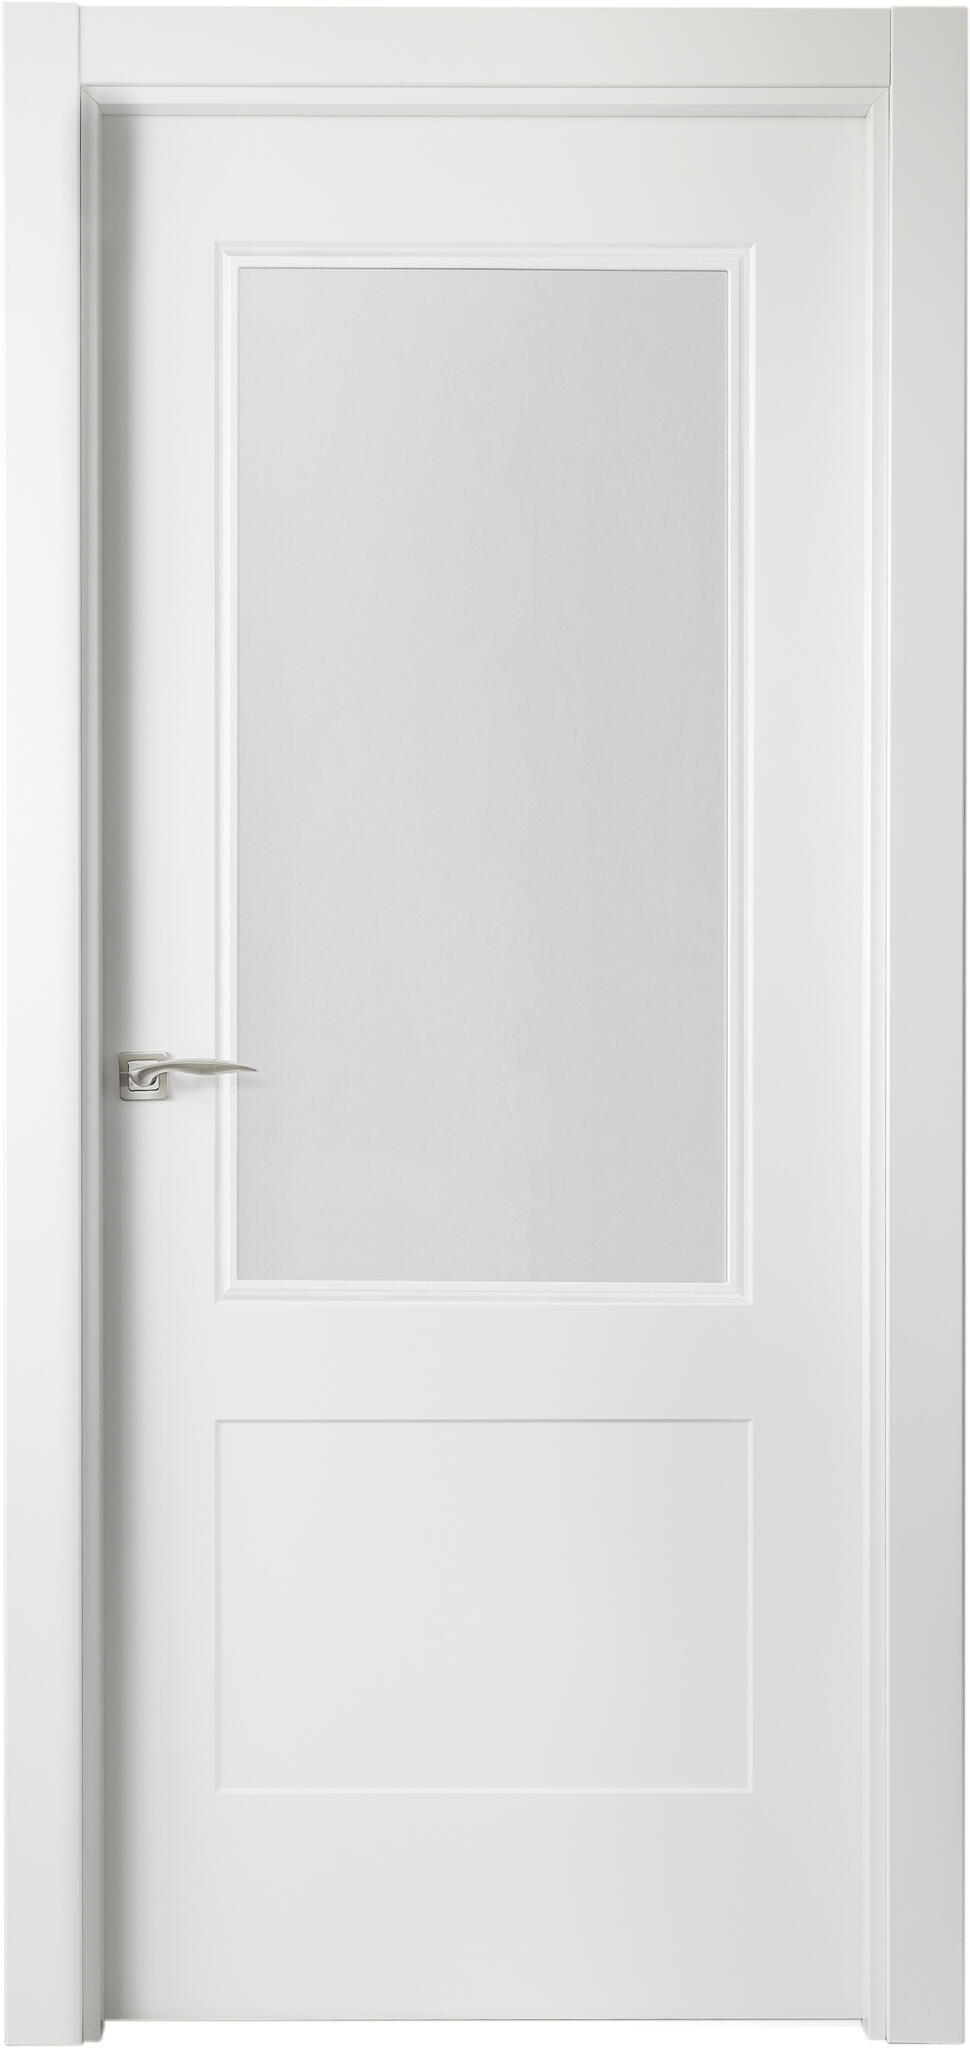 Puerta atlanta plus blanco apertura derecha con cristal 11x72,5cm